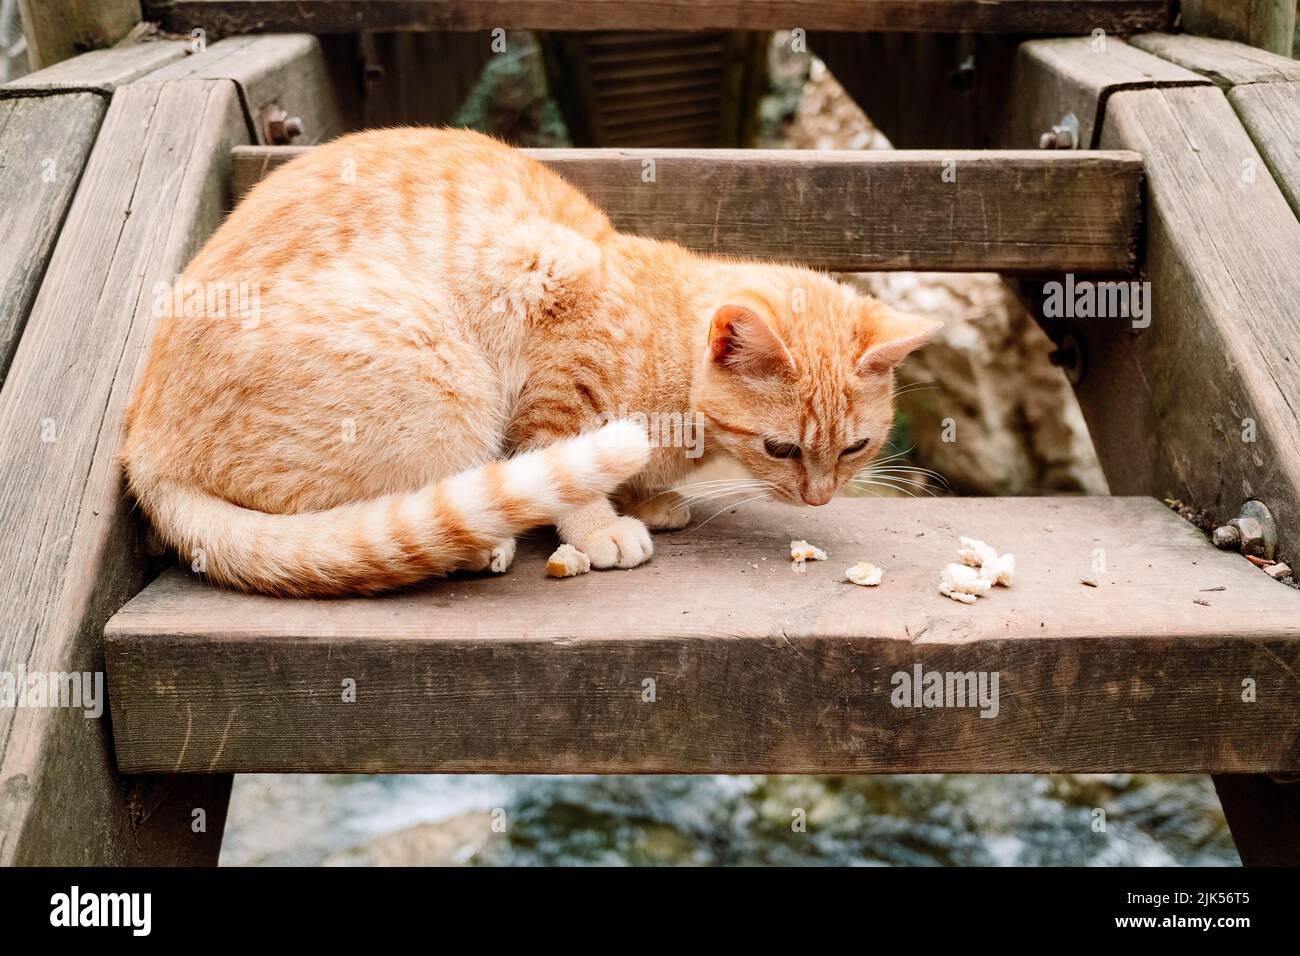 Un chat tabby orange se nourrit de quelques restes trouvés dans la rue. Banque D'Images